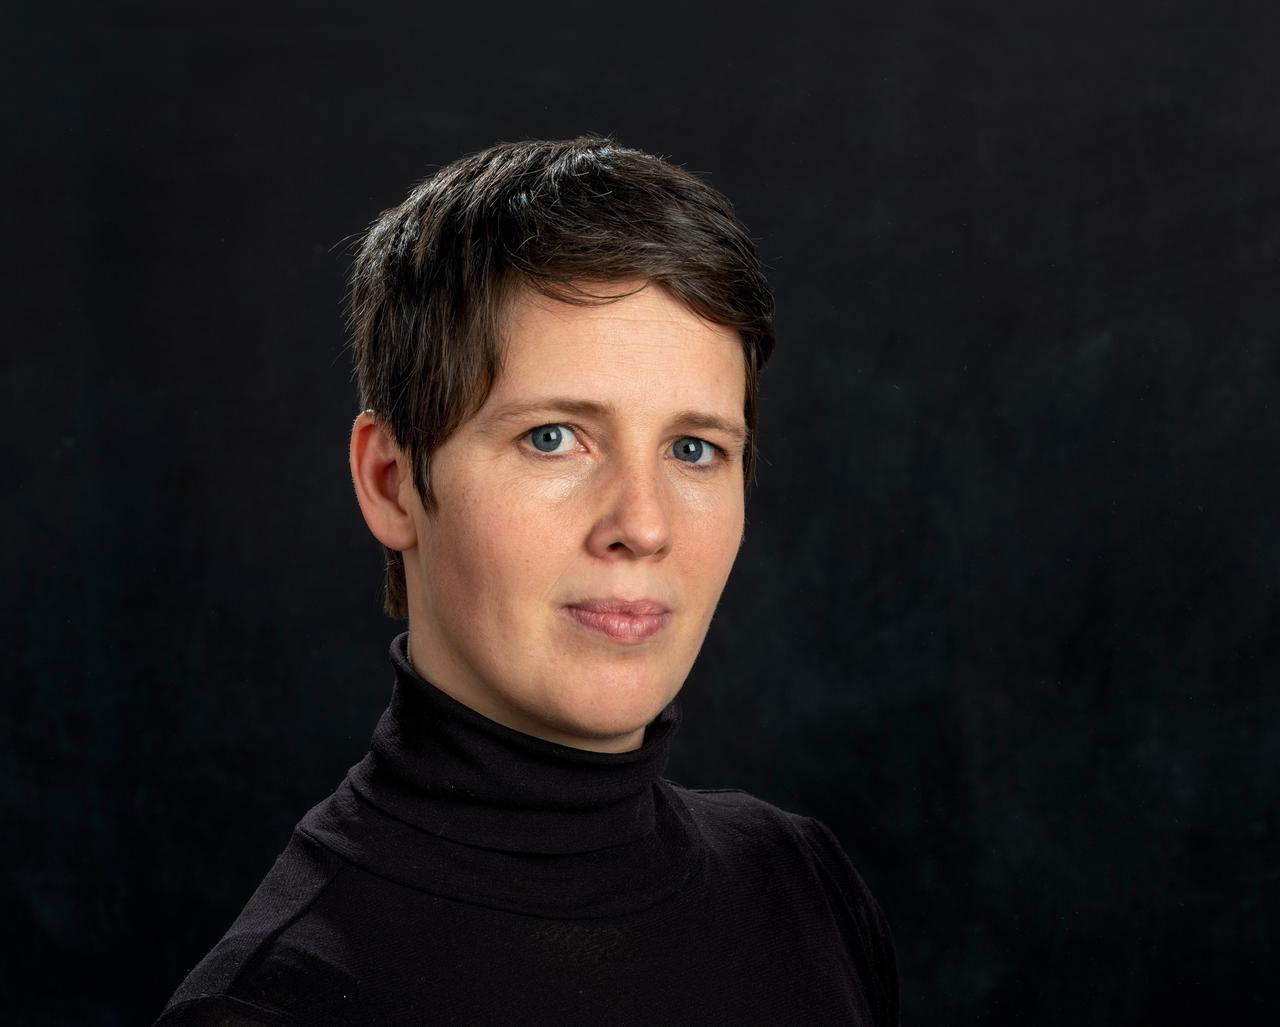 Physikerin Viola Priesemann im Portait vor einem dunklem Hintergrund